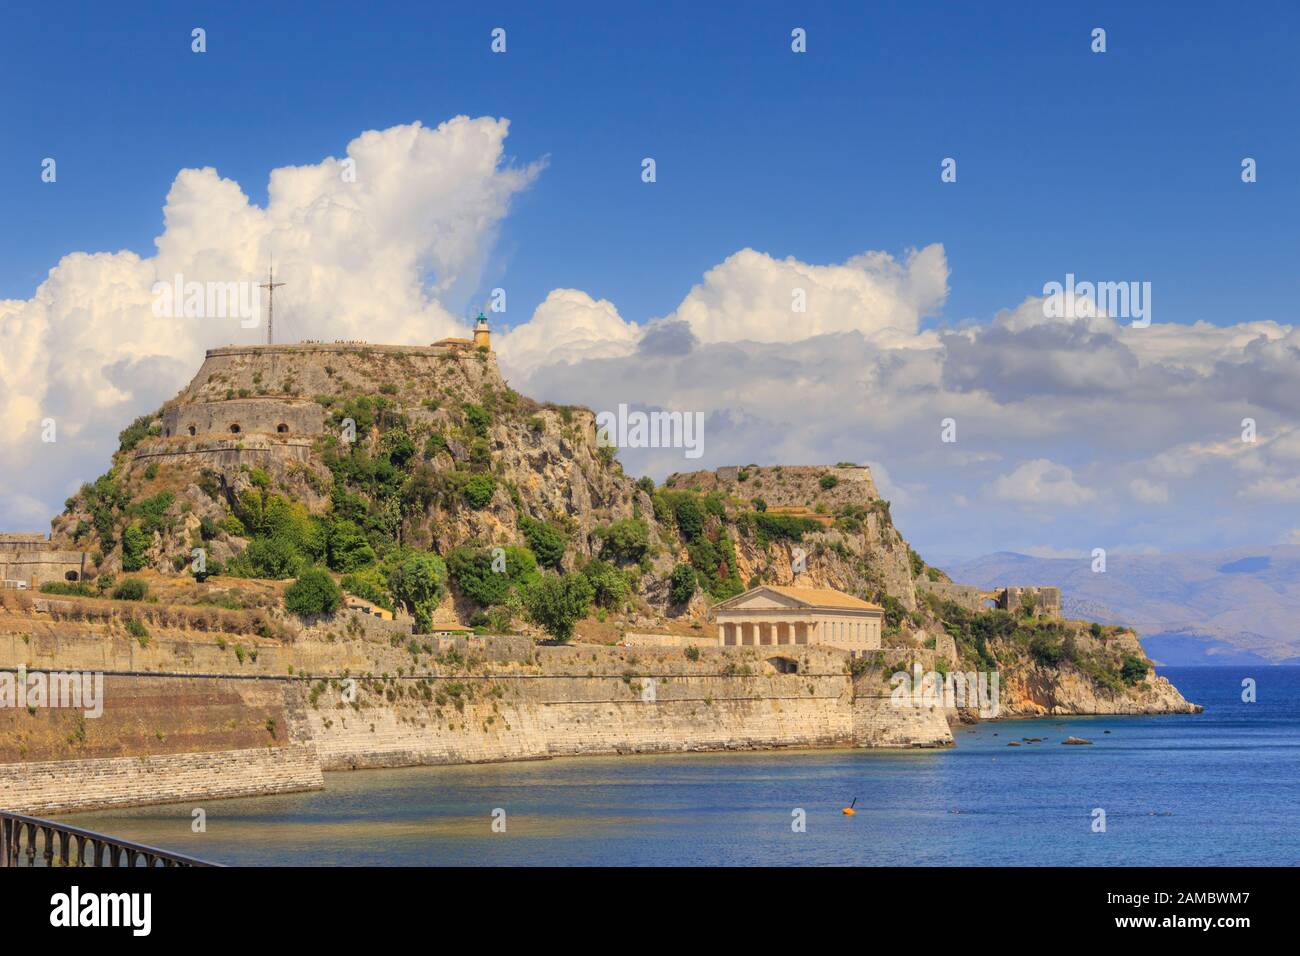 Kerkyra, Hauptstadt der Insel Korfu. Griechenland. Blick auf Die Alte Festung der Stadt Korfu auf der Halbinsel bis zum kristallklaren azurblauen Meer. Stockfoto